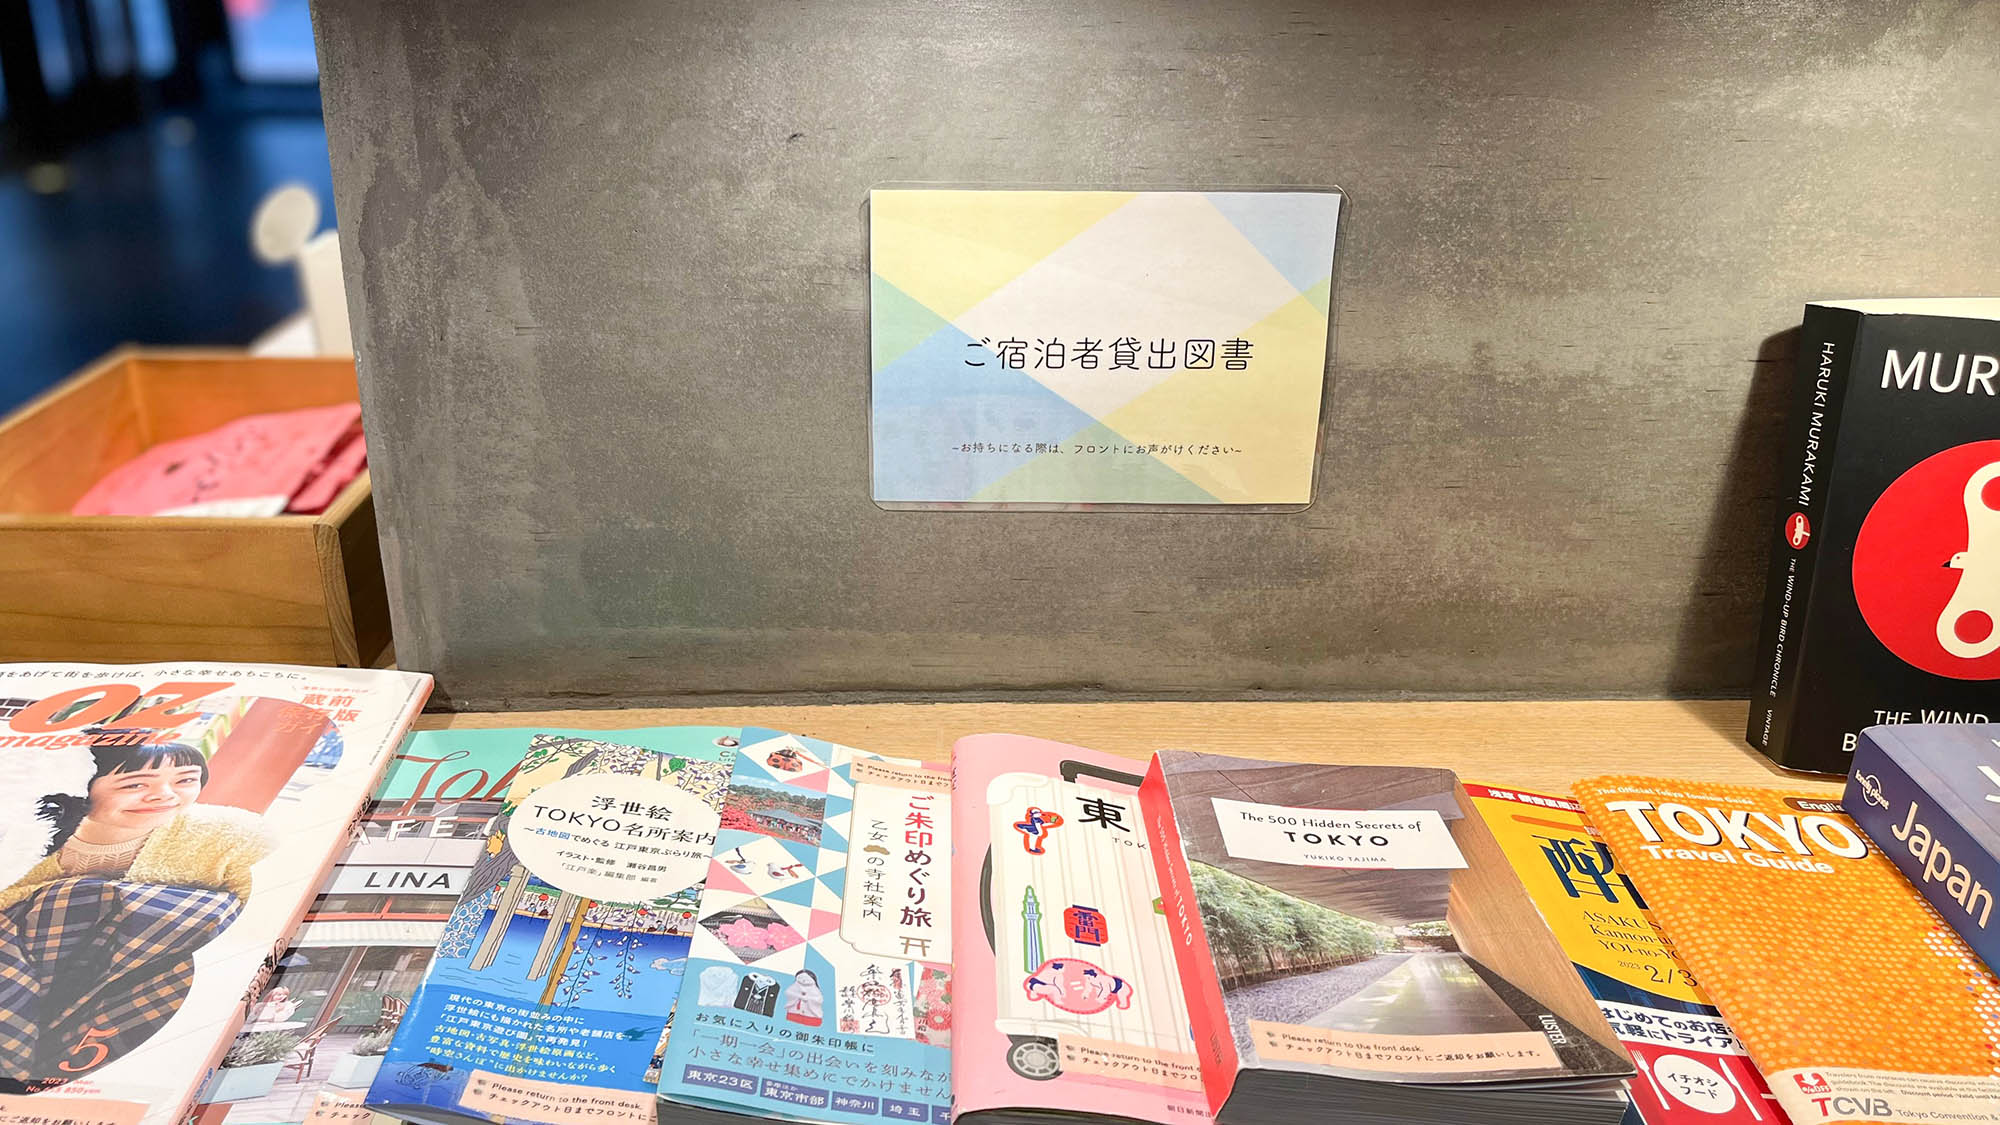 ・【貸出図書】東京観光にも役立ちそうな本がずらりとございます